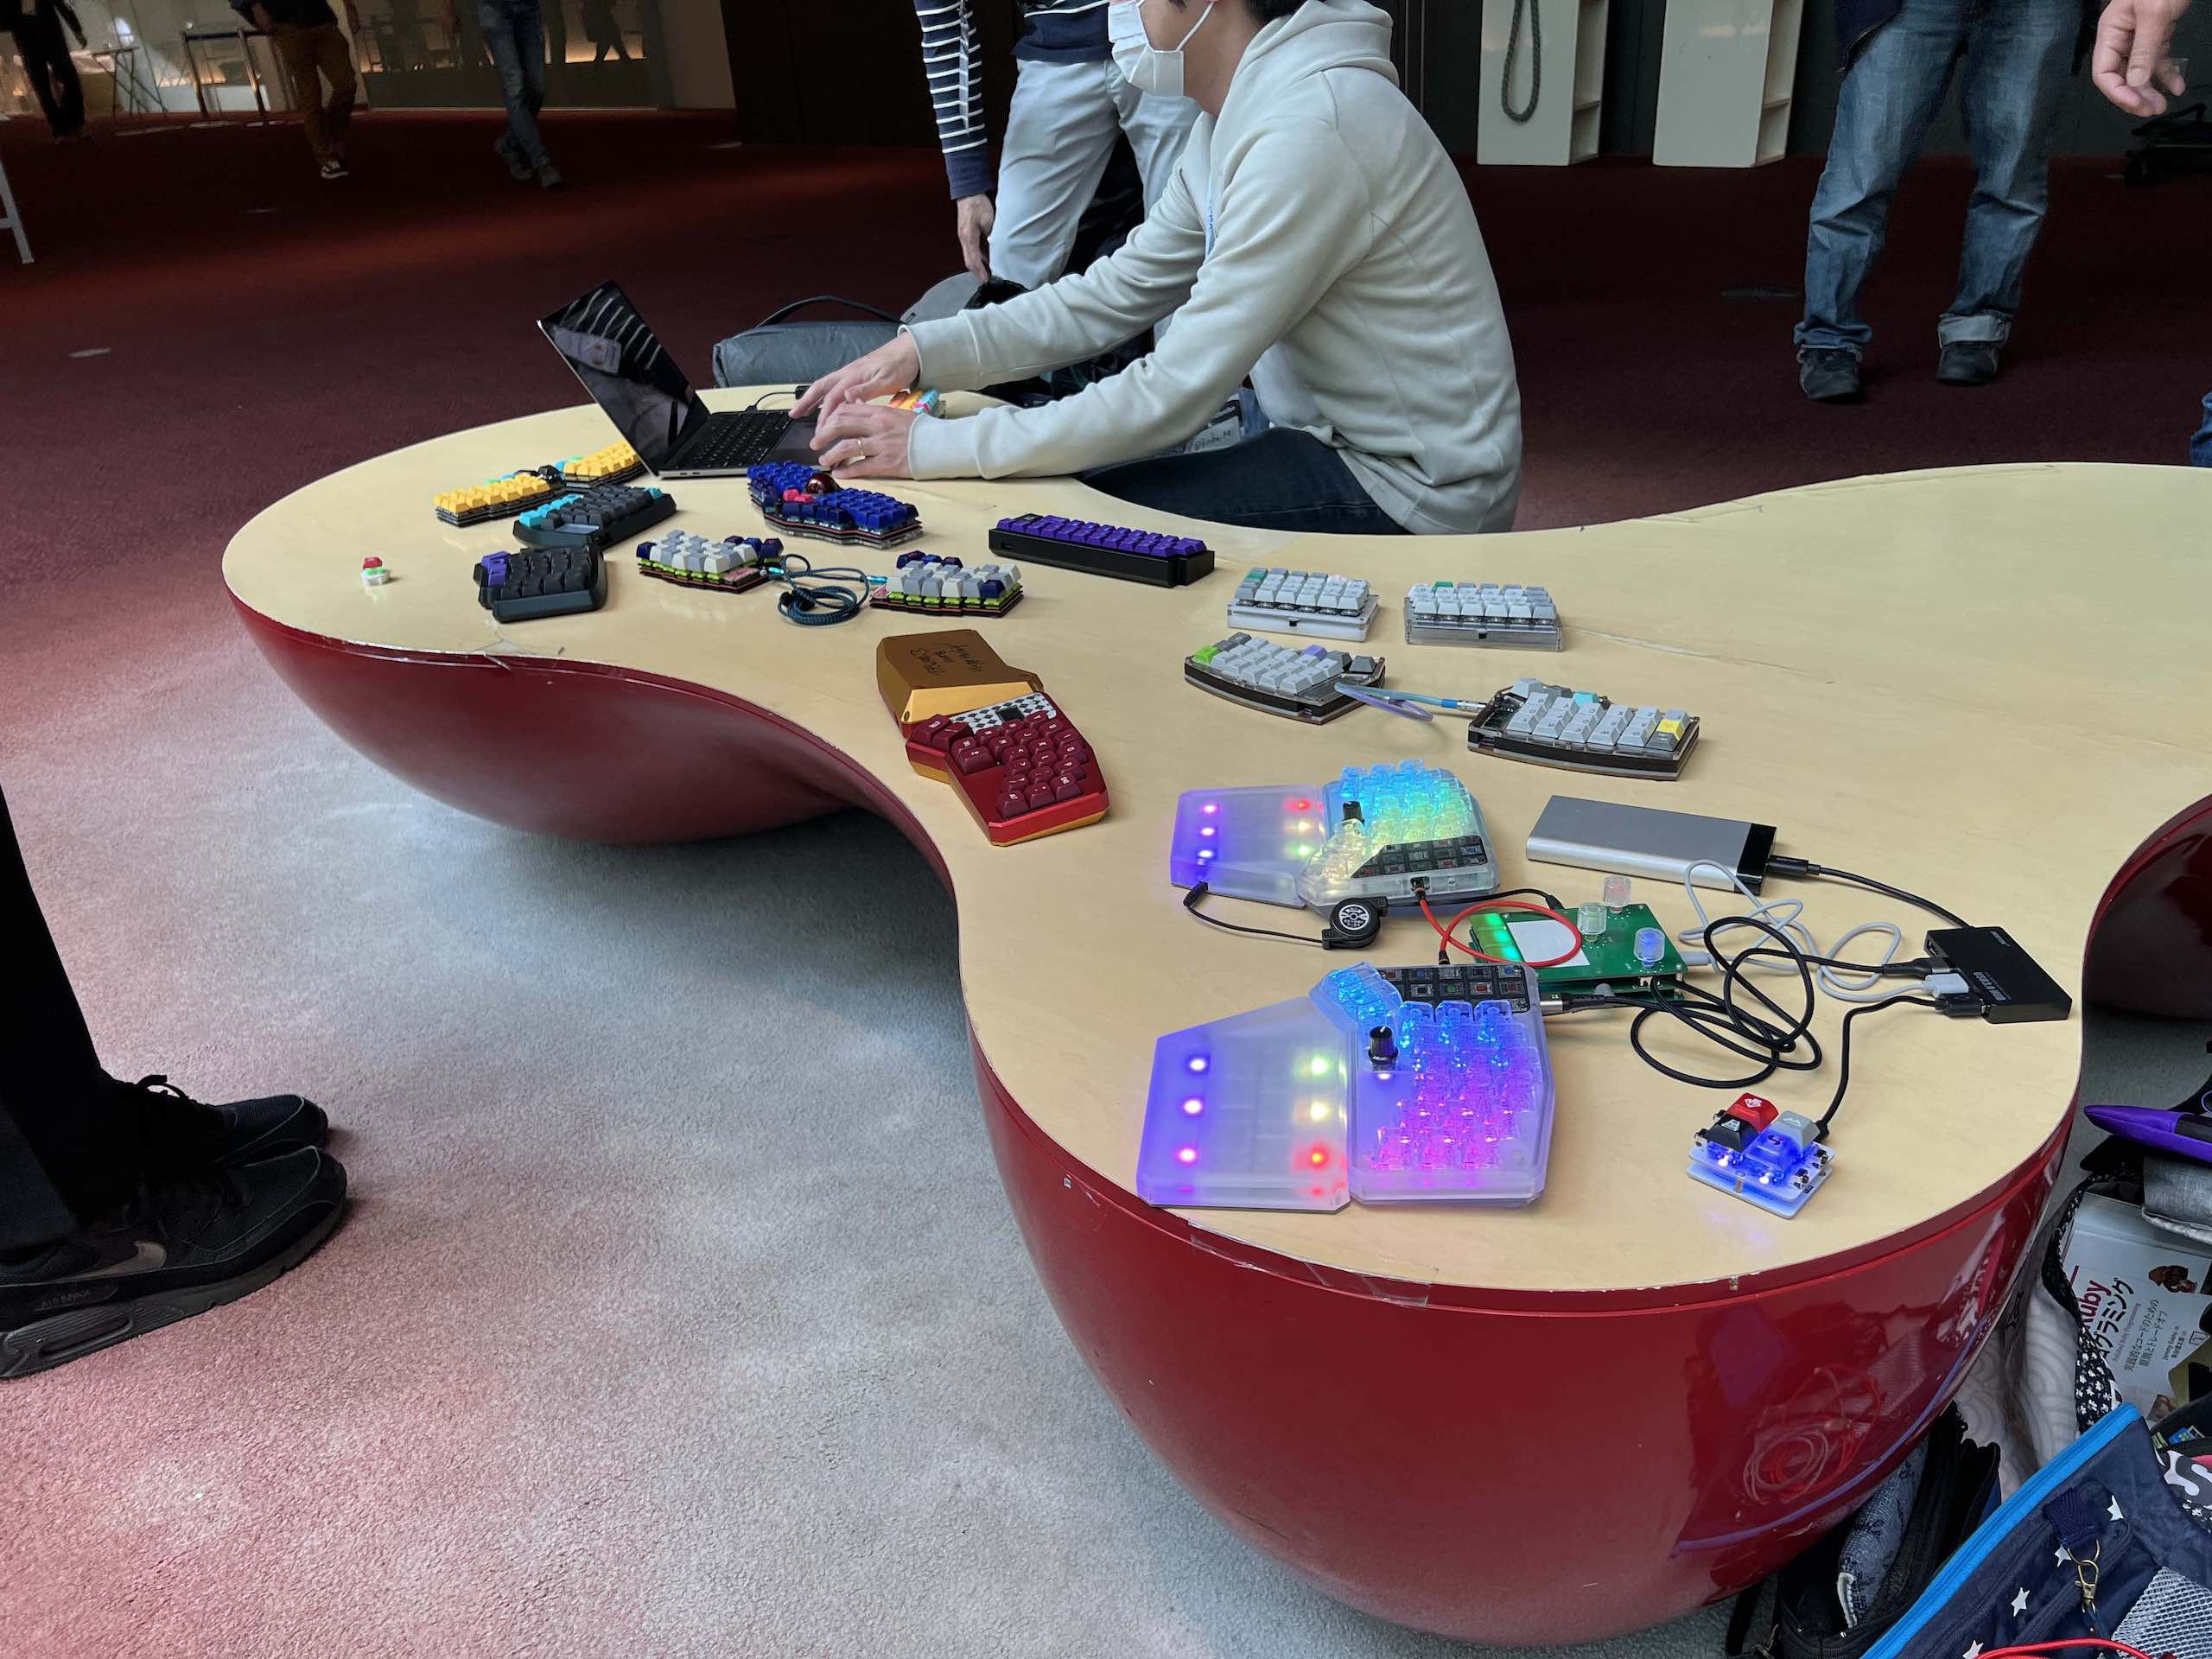 RubyKaigiの会場の廊下に並べられたキーボード